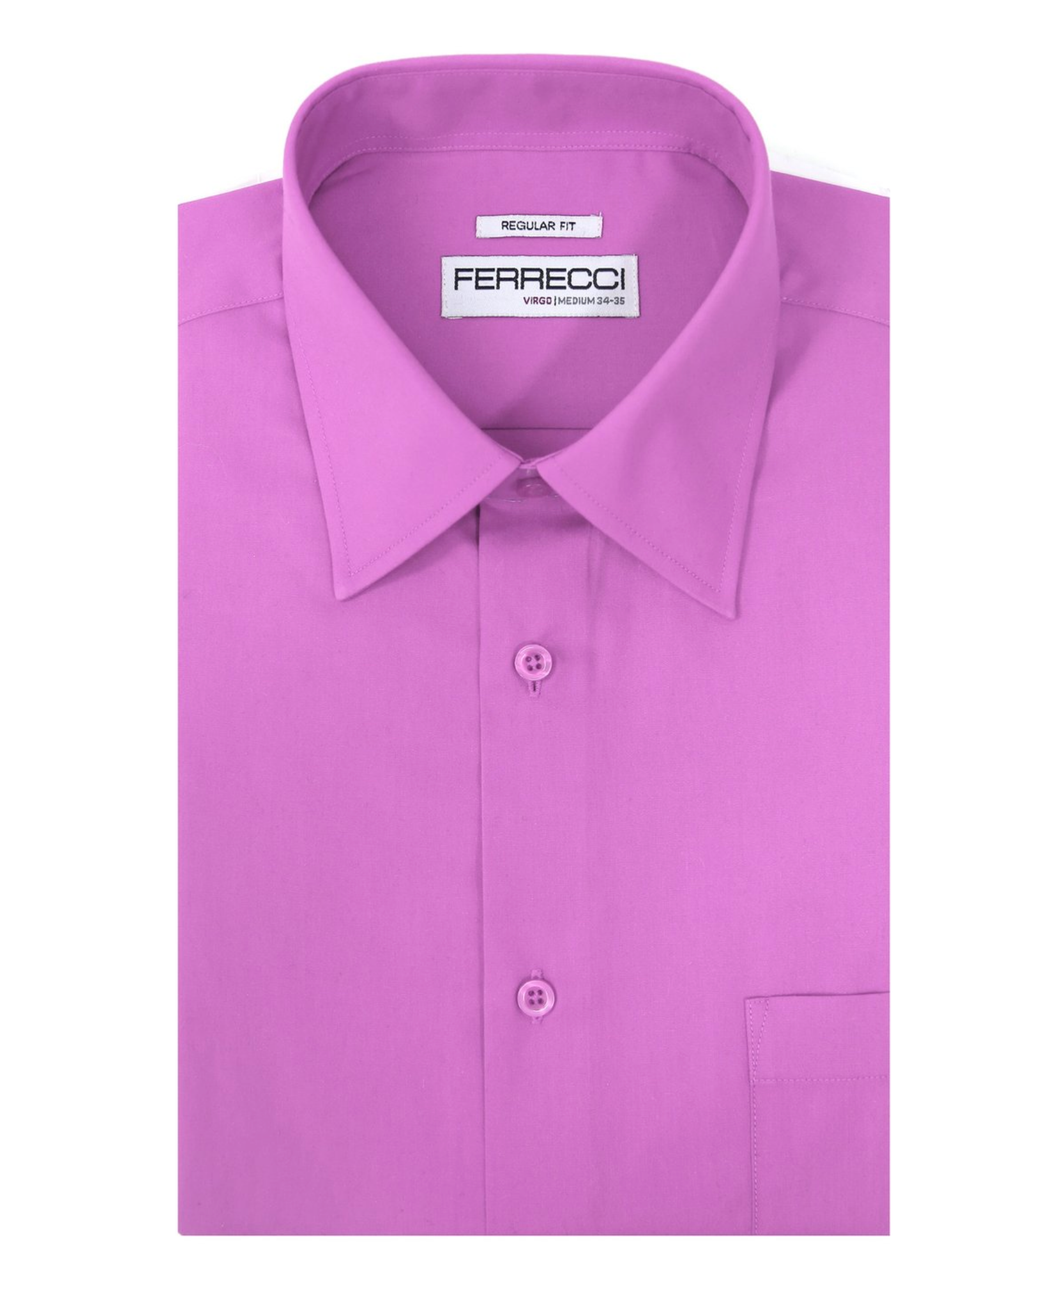 Virgo Lavender Regular Fit Shirt - Ferrecci USA 